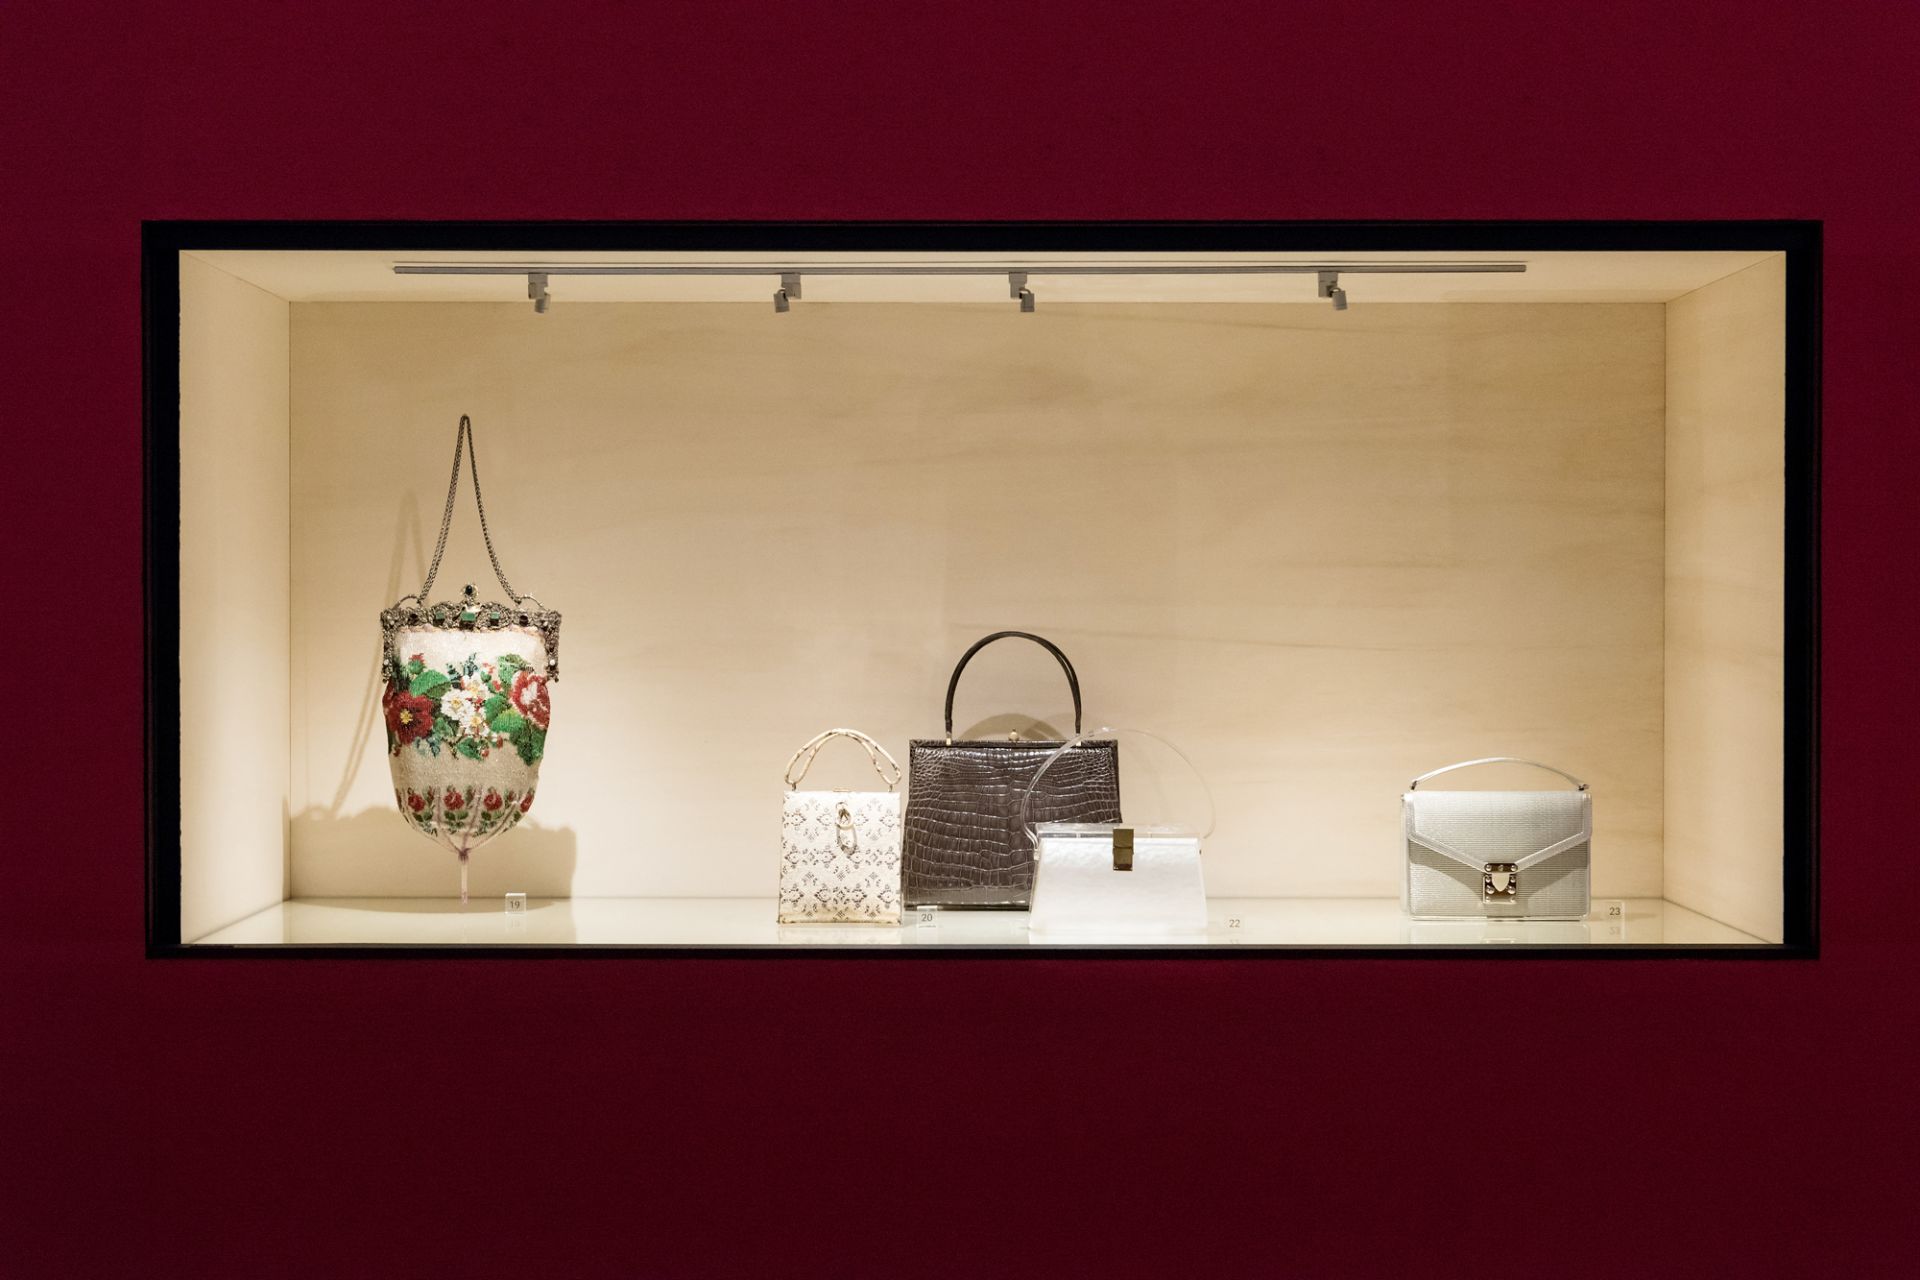 Exhibition view, handbags